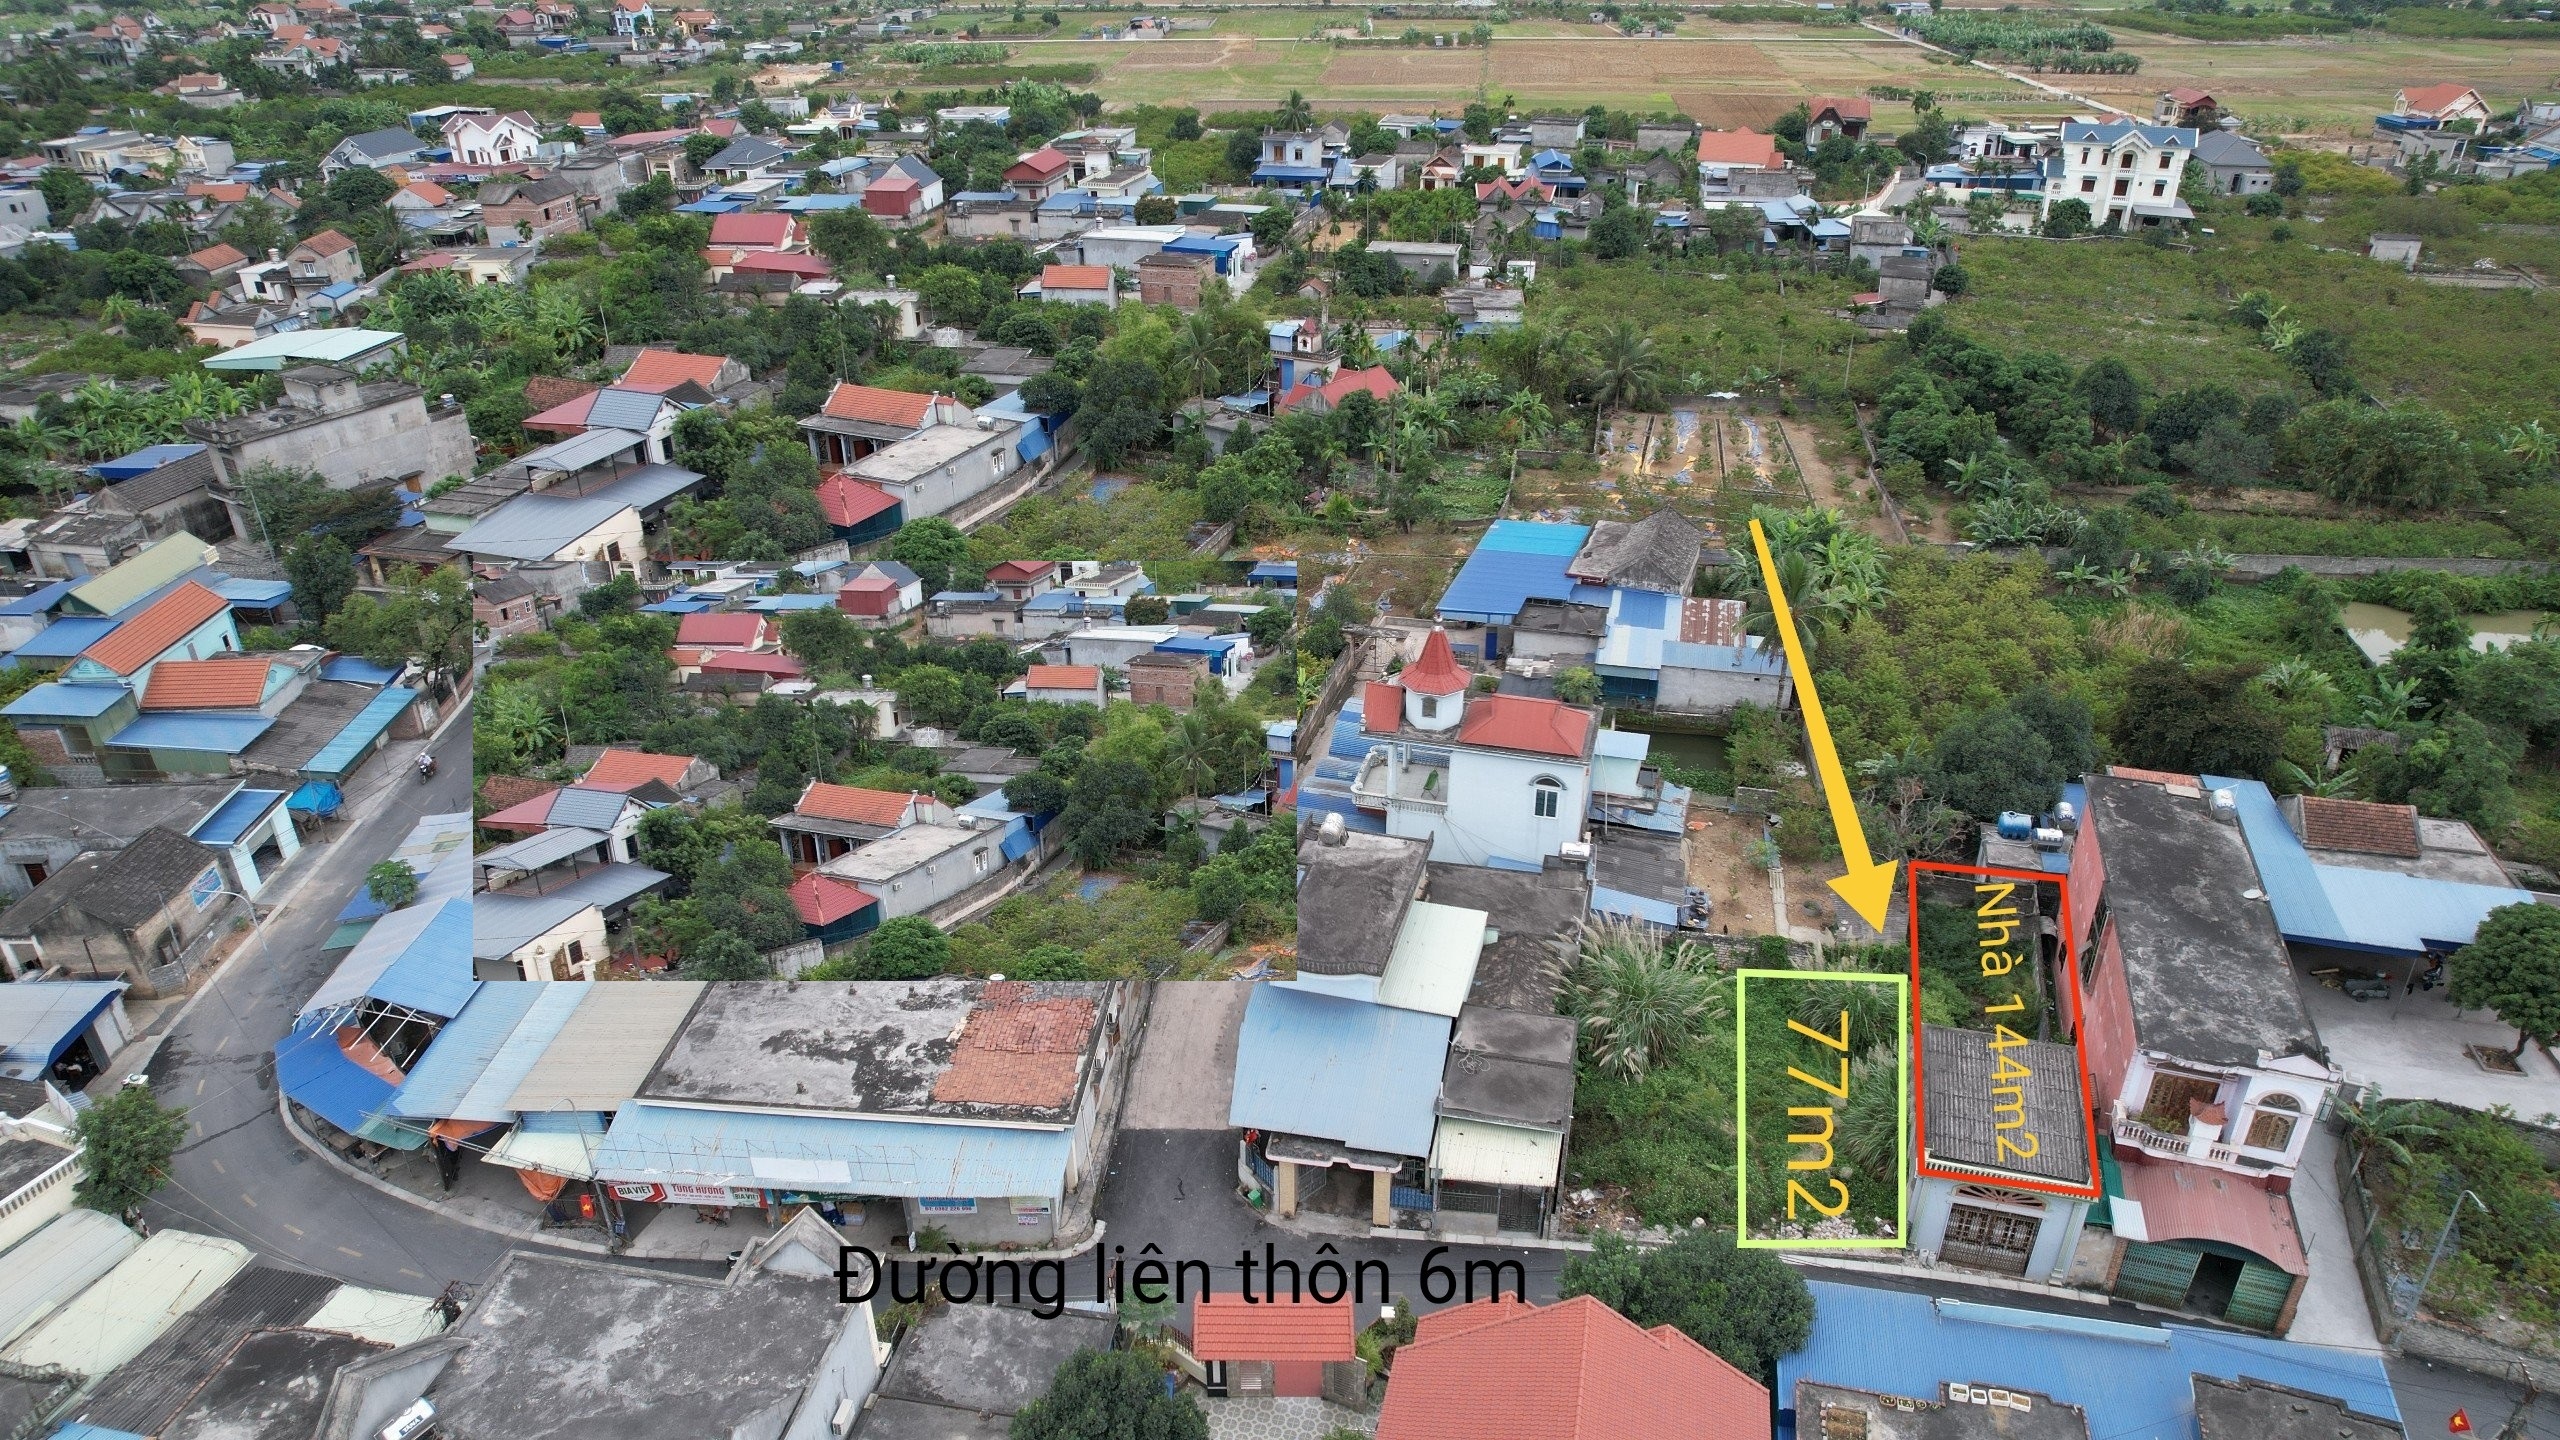 Bán nhà mặt đường thôn 6m tại xã Lại Xuân, Thuỷ Nguyên, Hải Phòng